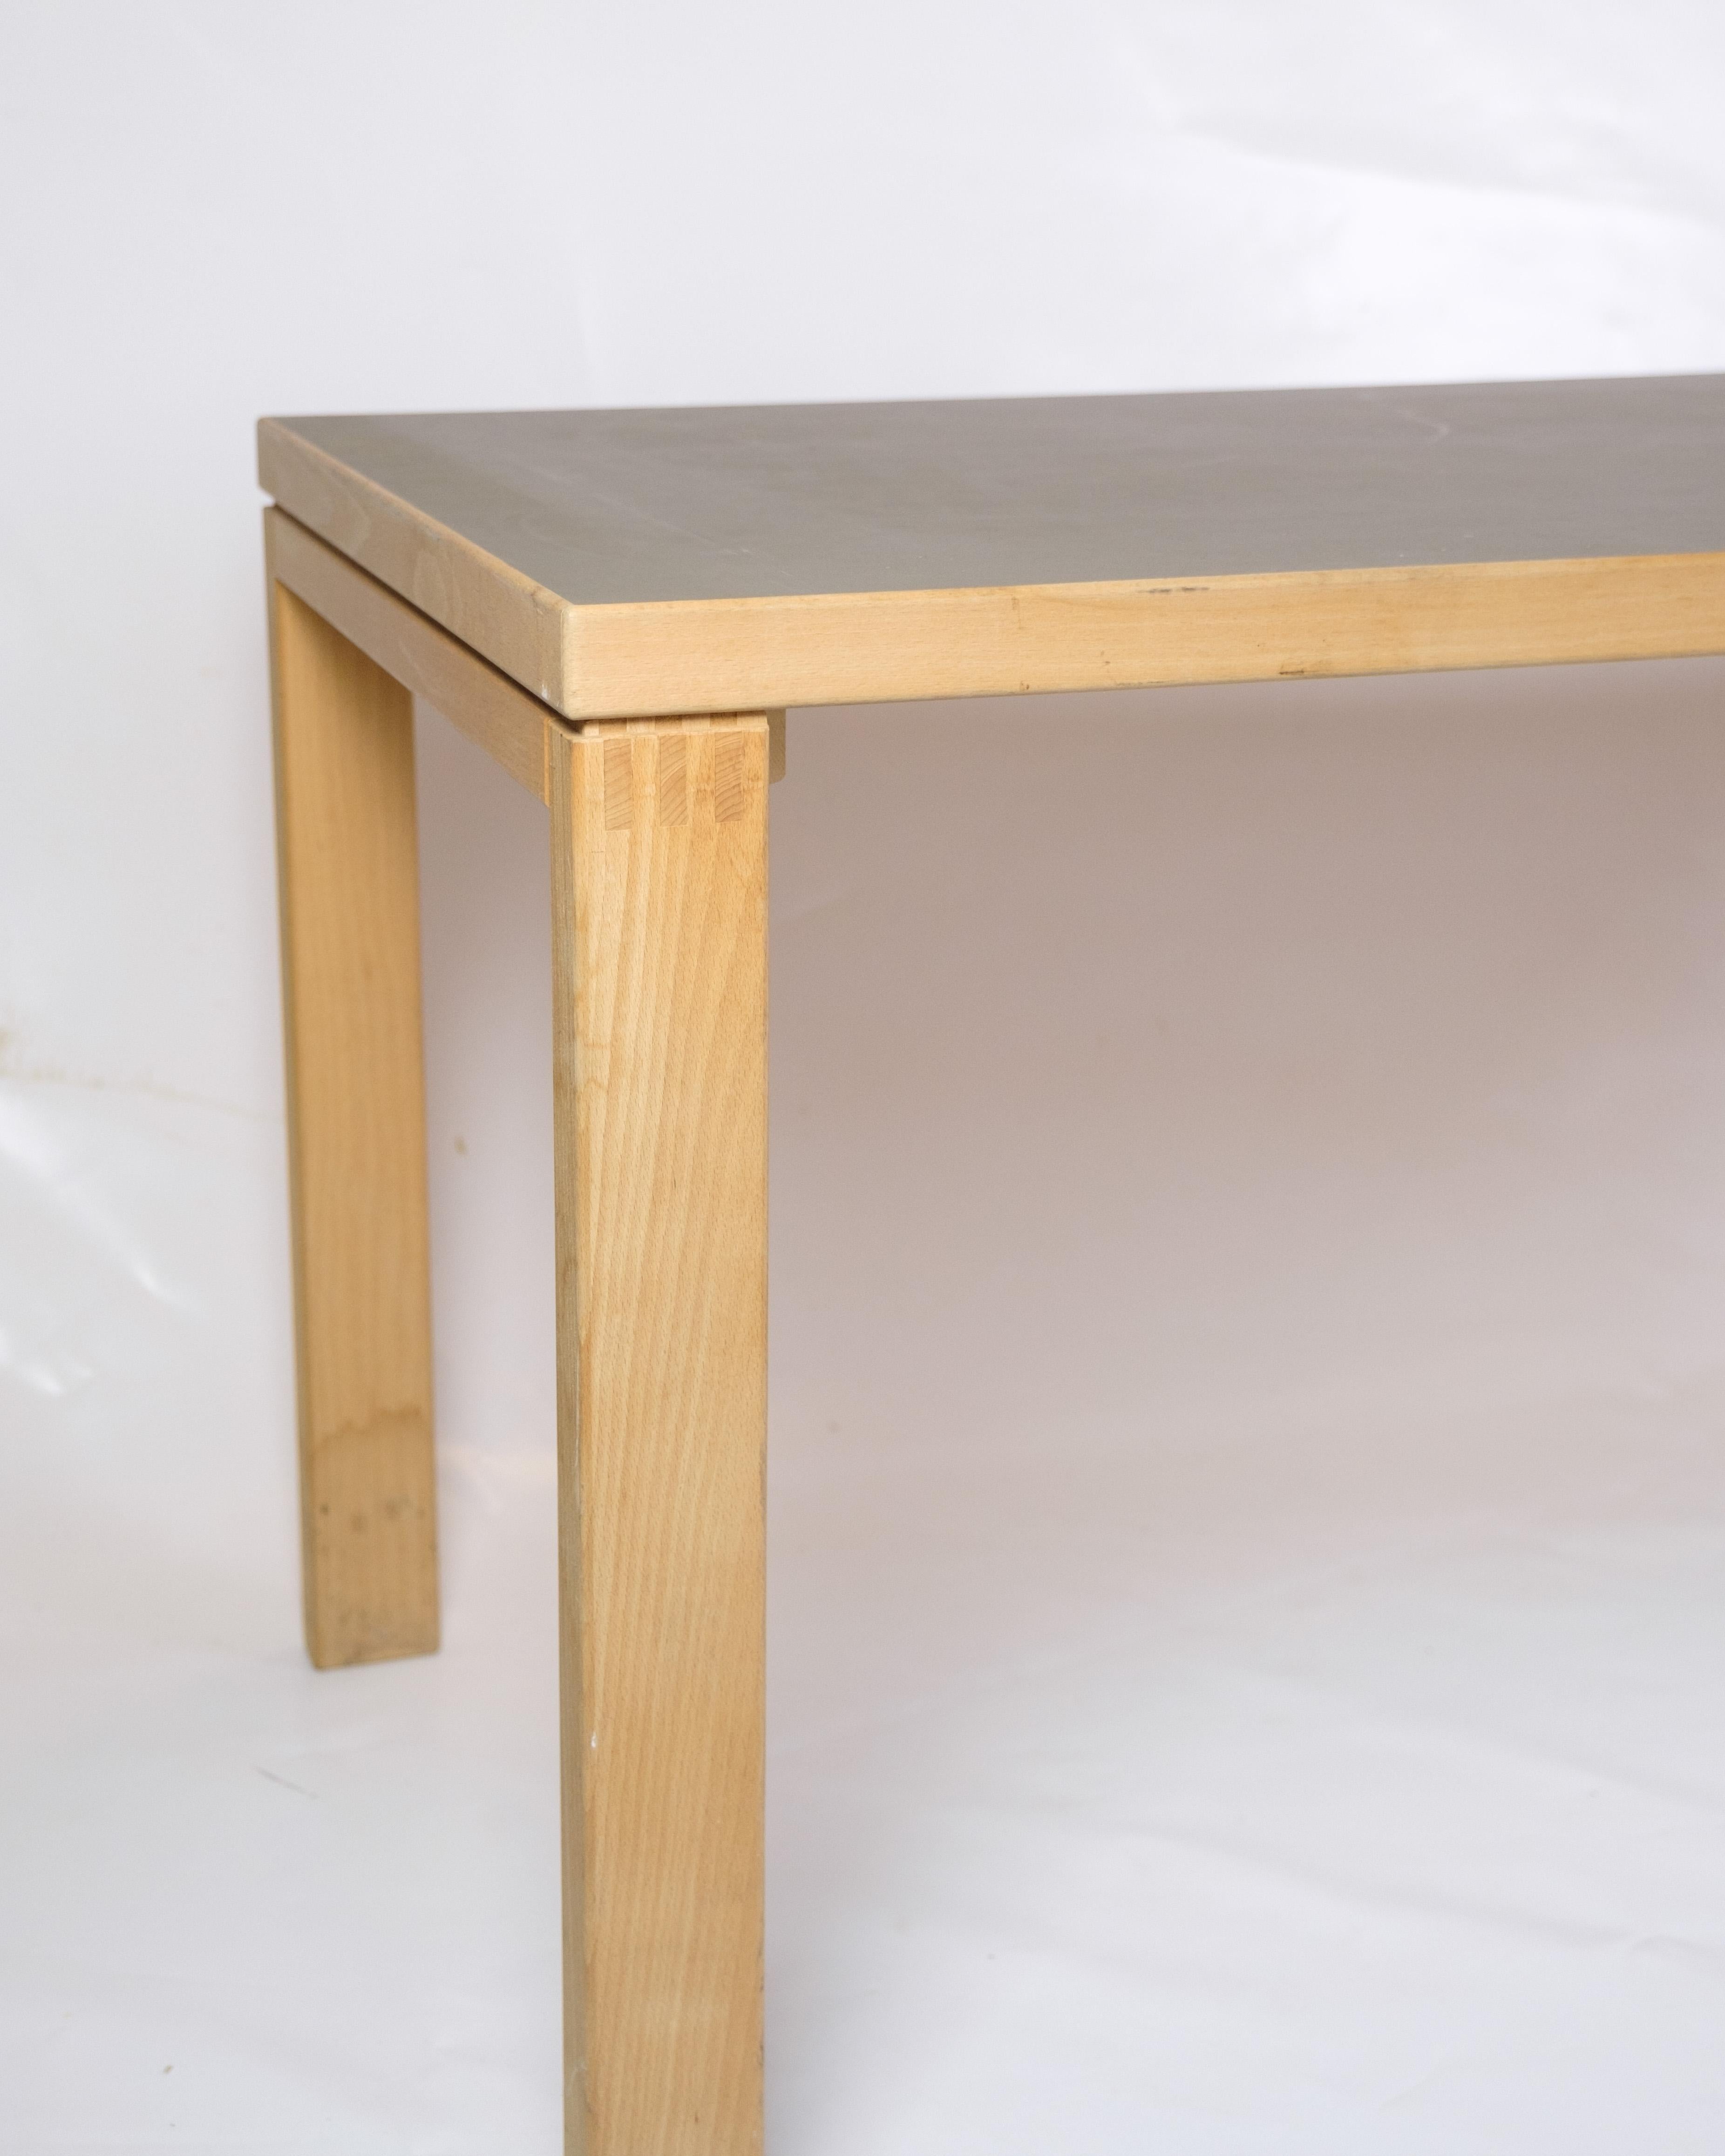 Dieser vielseitige Esstisch aus Buchenholz verbindet Funktionalität mit zeitloser Eleganz. Die Tischplatte ist mit Linoleum bedeckt, das ein dauerhaftes und stilvolles Aussehen verleiht.

Dieser Tisch wurde 1960 von dem berühmten finnischen